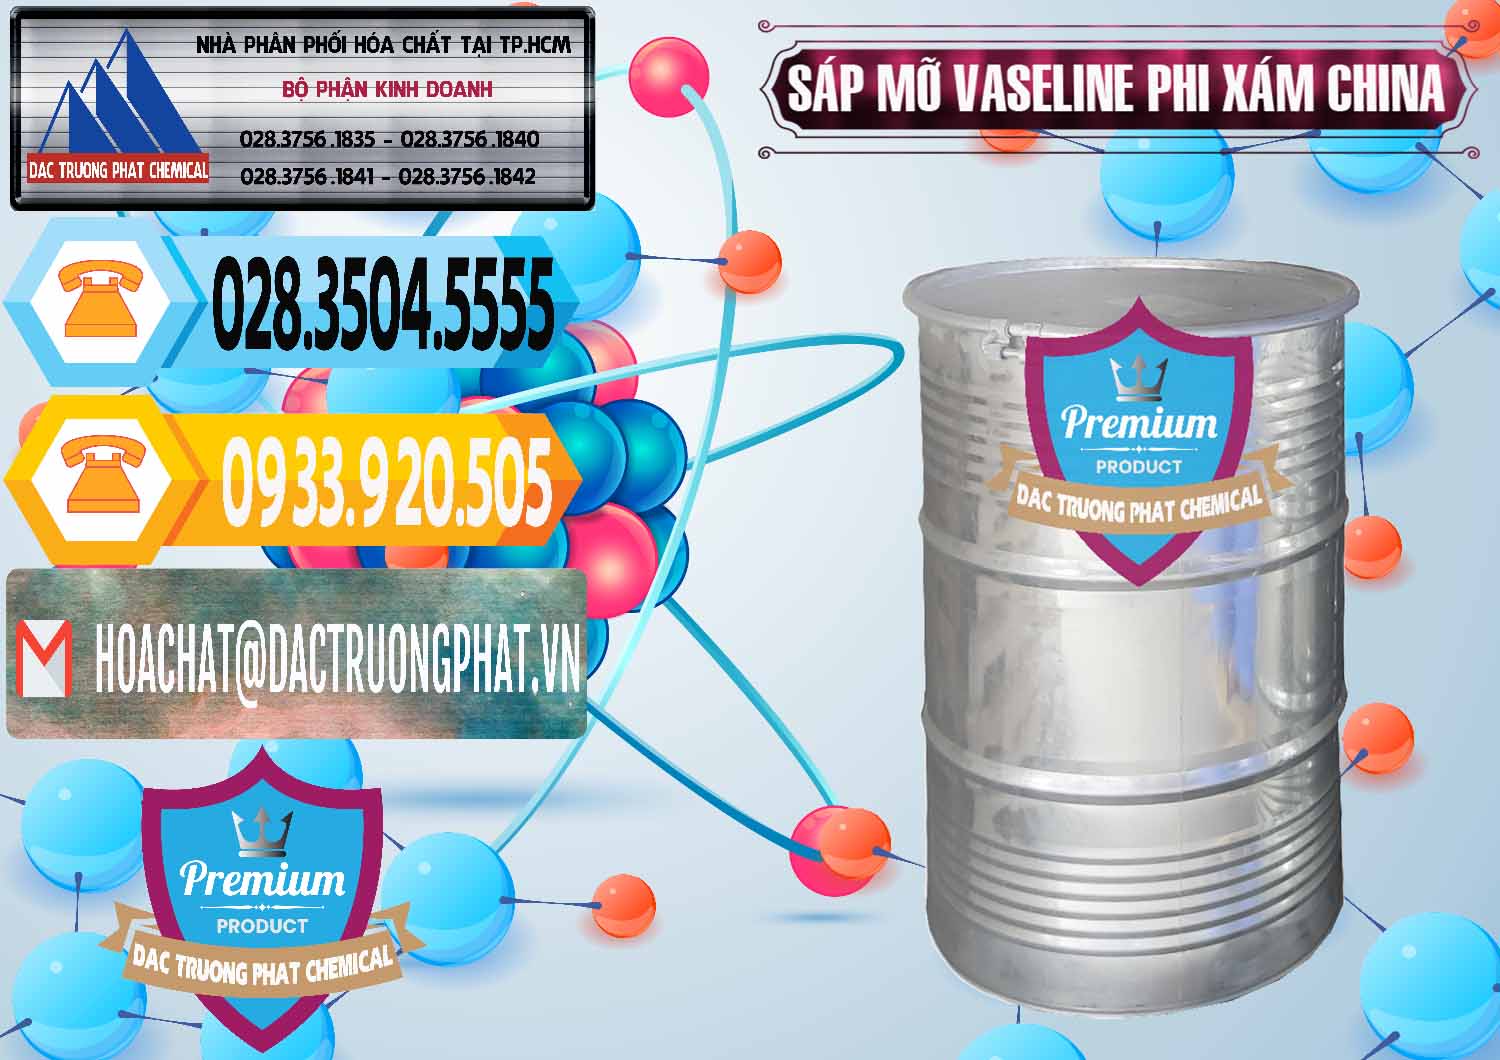 Cty chuyên bán & cung ứng Sáp Mỡ Vaseline Phi Xám Trung Quốc China - 0291 - Đơn vị chuyên nhập khẩu _ cung cấp hóa chất tại TP.HCM - hoachattayrua.net